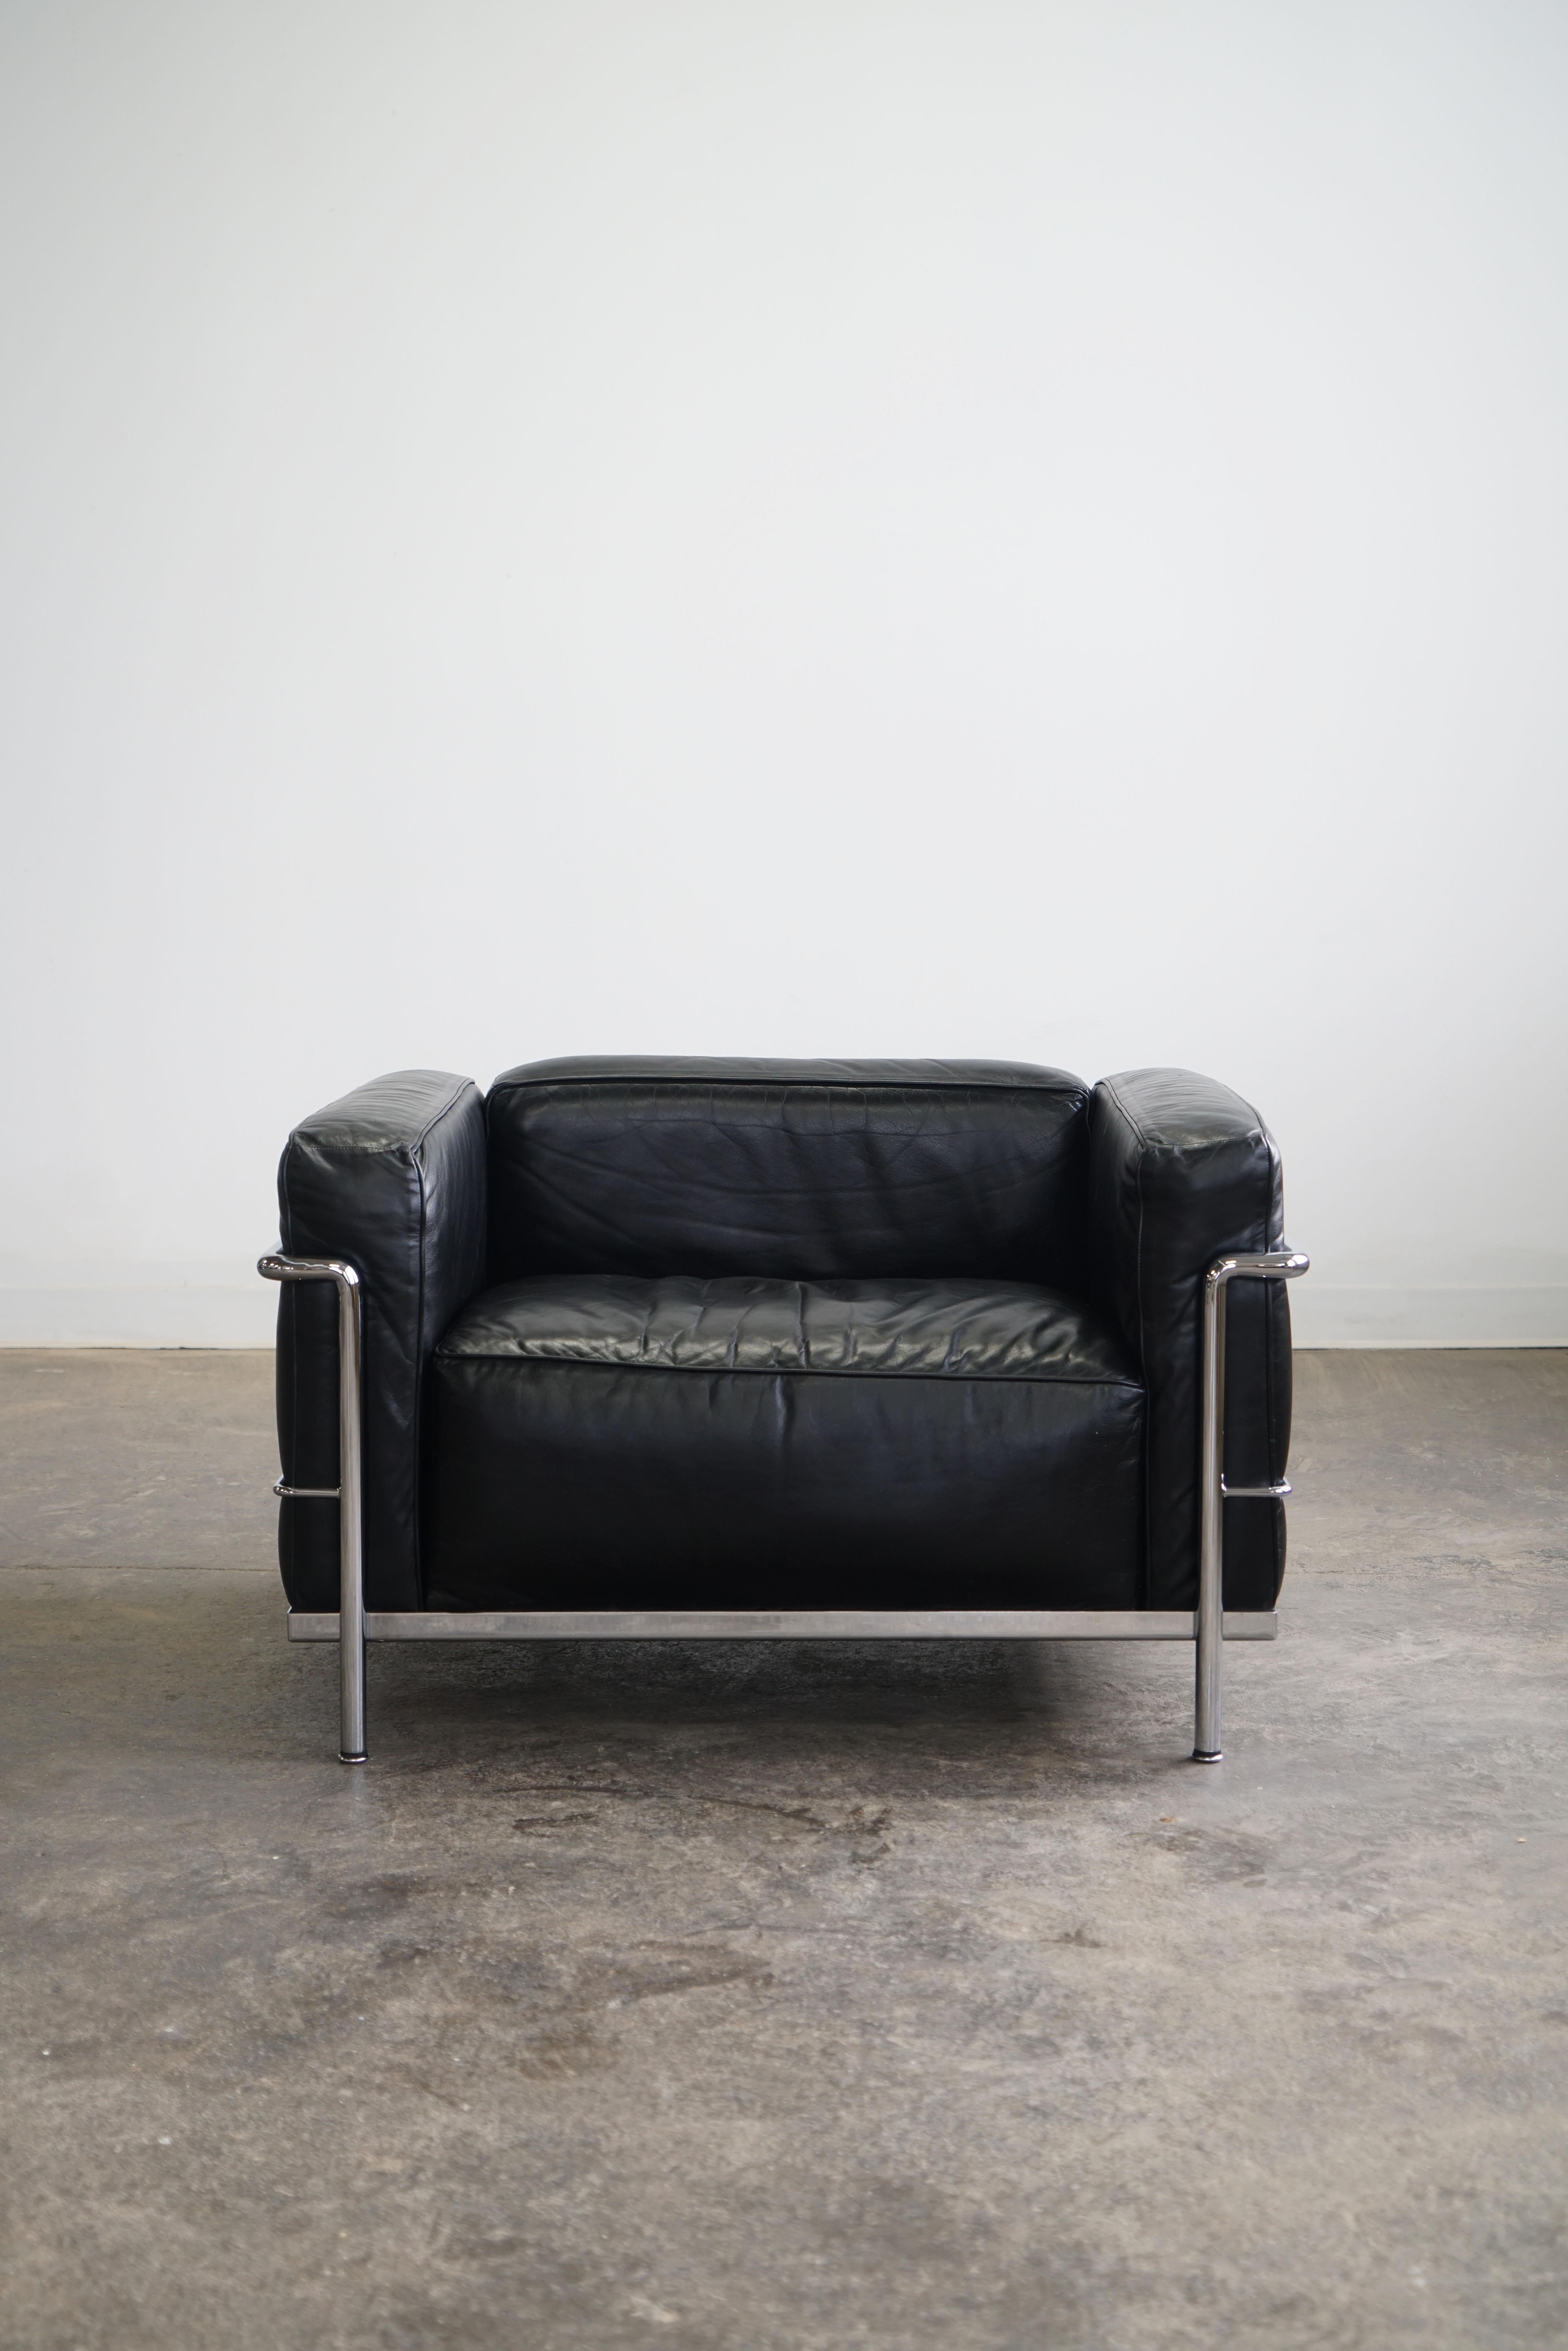 Ein Paar LC3 Grand Modele Sessel für Cassina.
Schwarzes Leder und verchromter Stahl.

Der LC3, einer der berühmtesten Stühle, wurde 1928 von Le Corbusier, Pierre Jeanneret und Charlotte Perriand entworfen. Der Stuhl ist ein wahres Symbol für